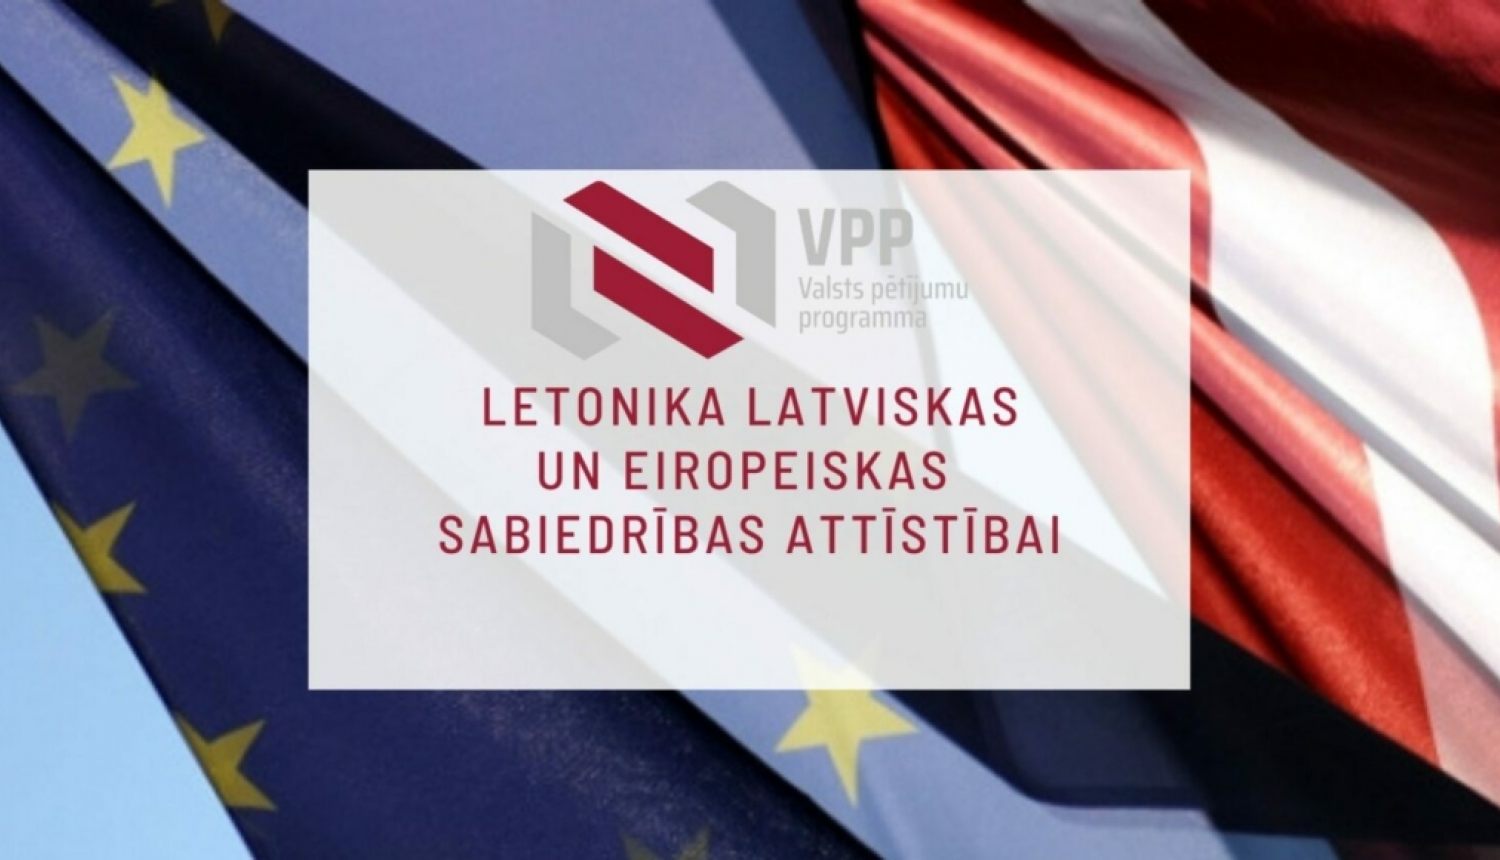 VPP “Letonika latviskas un eiropeiskas sabiedrības attīstībai” atklātajā konkursā ir iesniegti 17 projektu pieteikumi